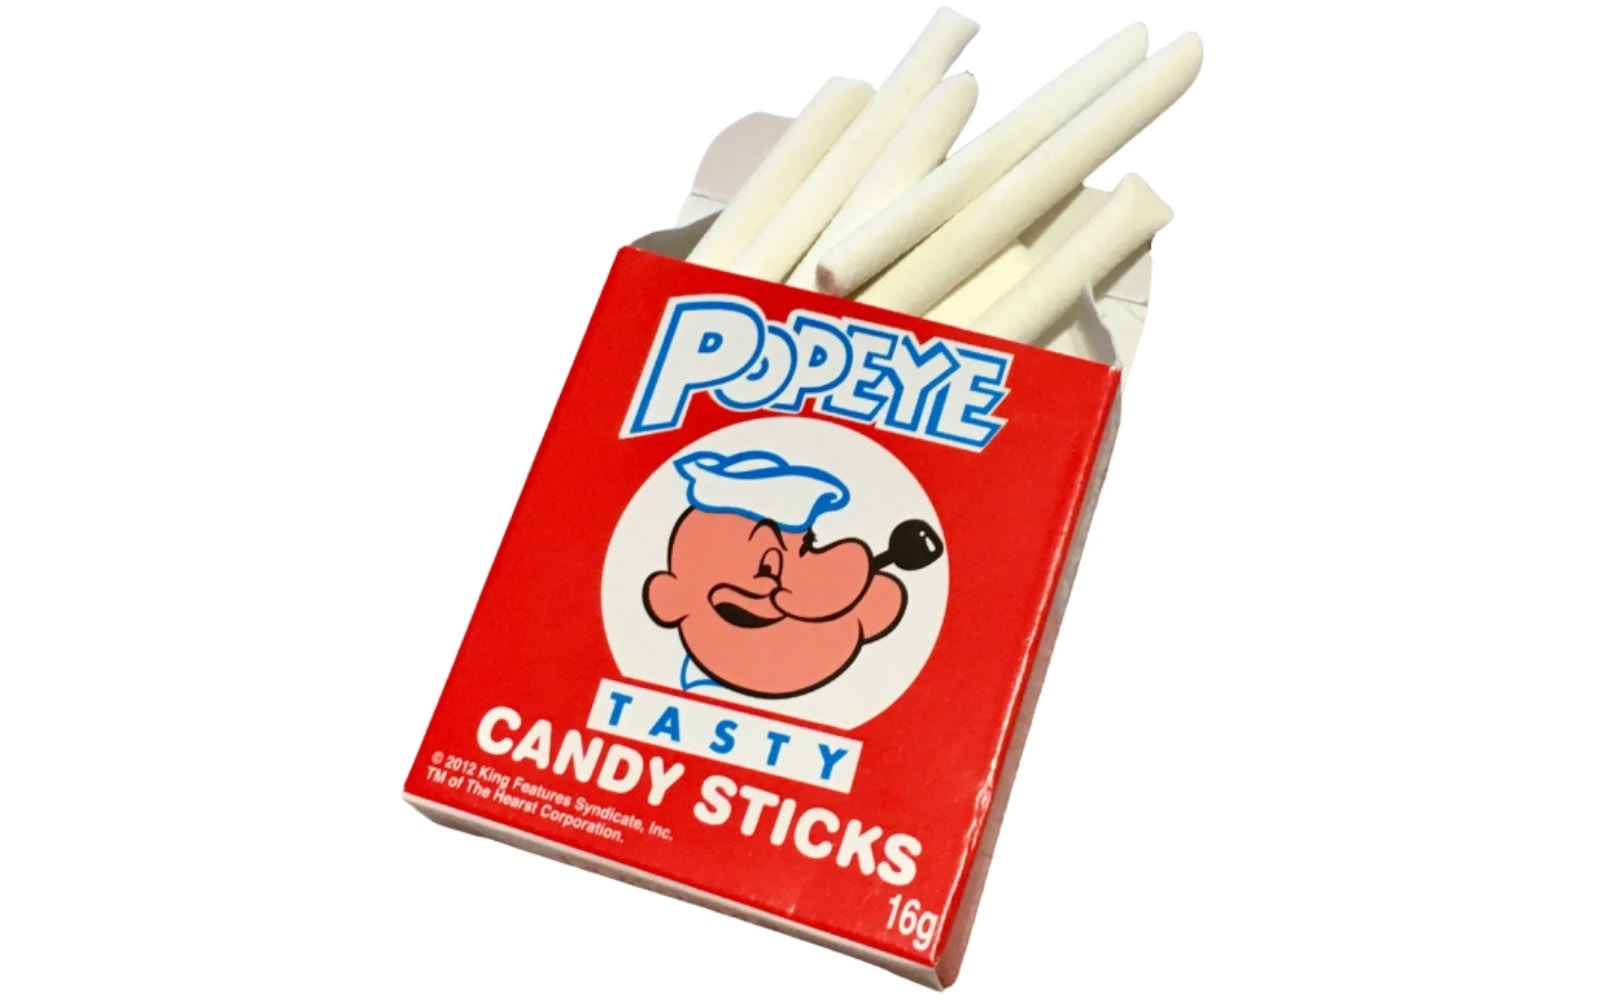 Popeye candy cigar .jpg